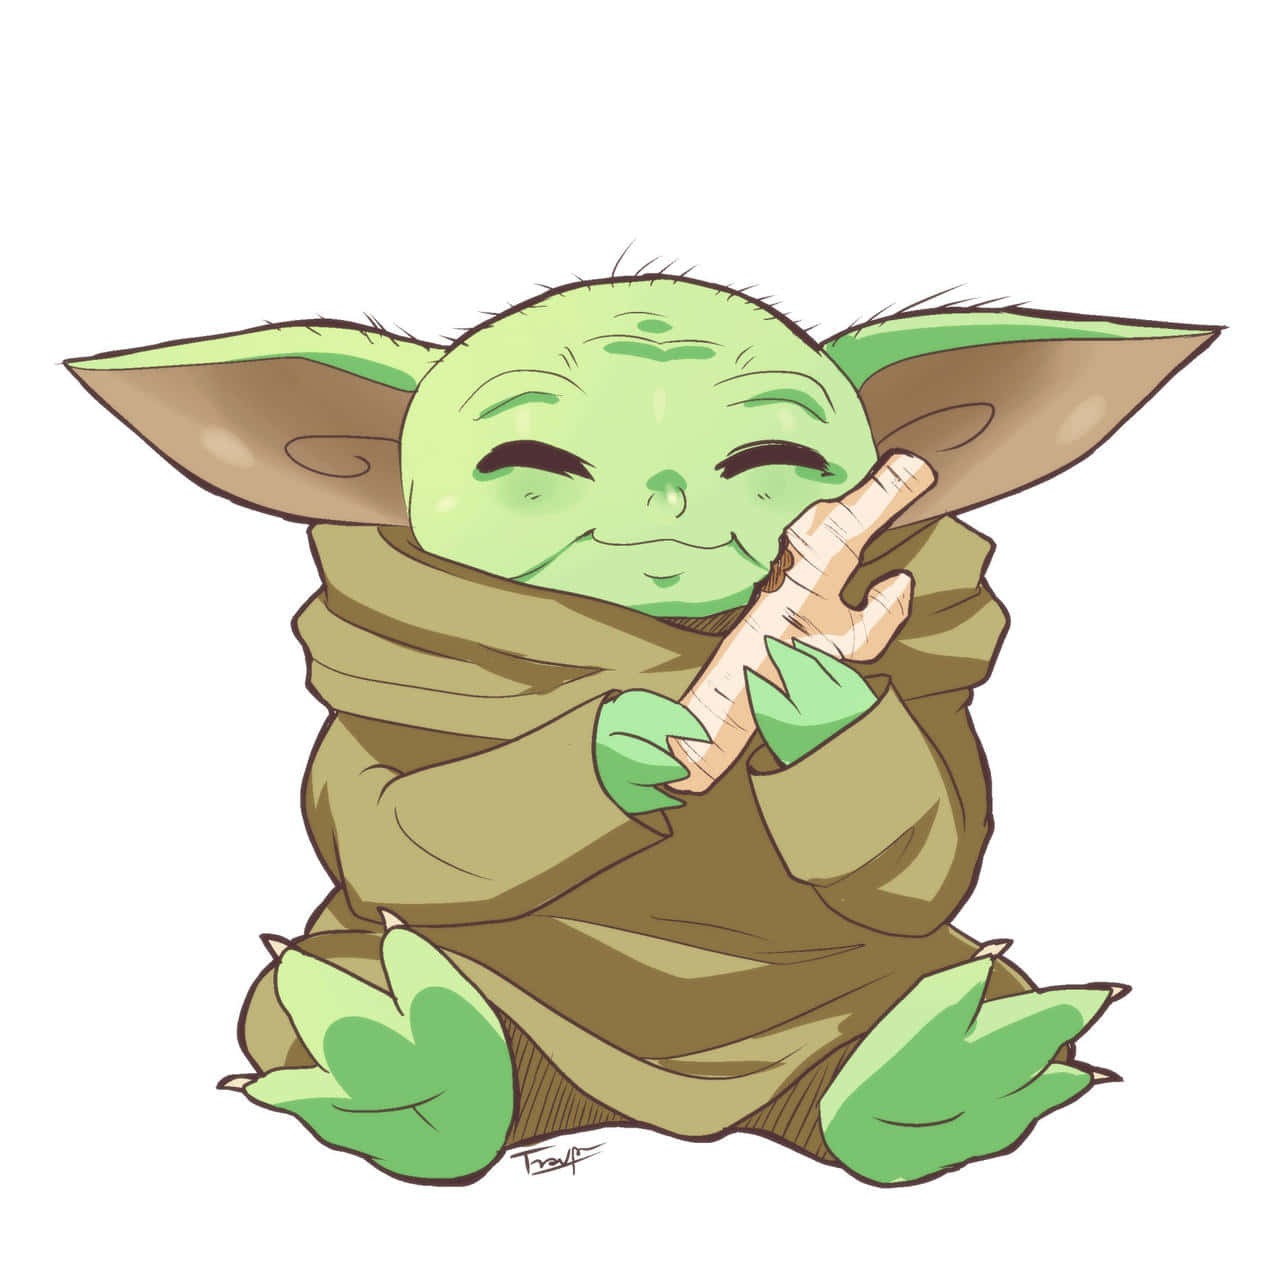 Imagendel Tierno Baby Yoda Comiendo Un Hueso.